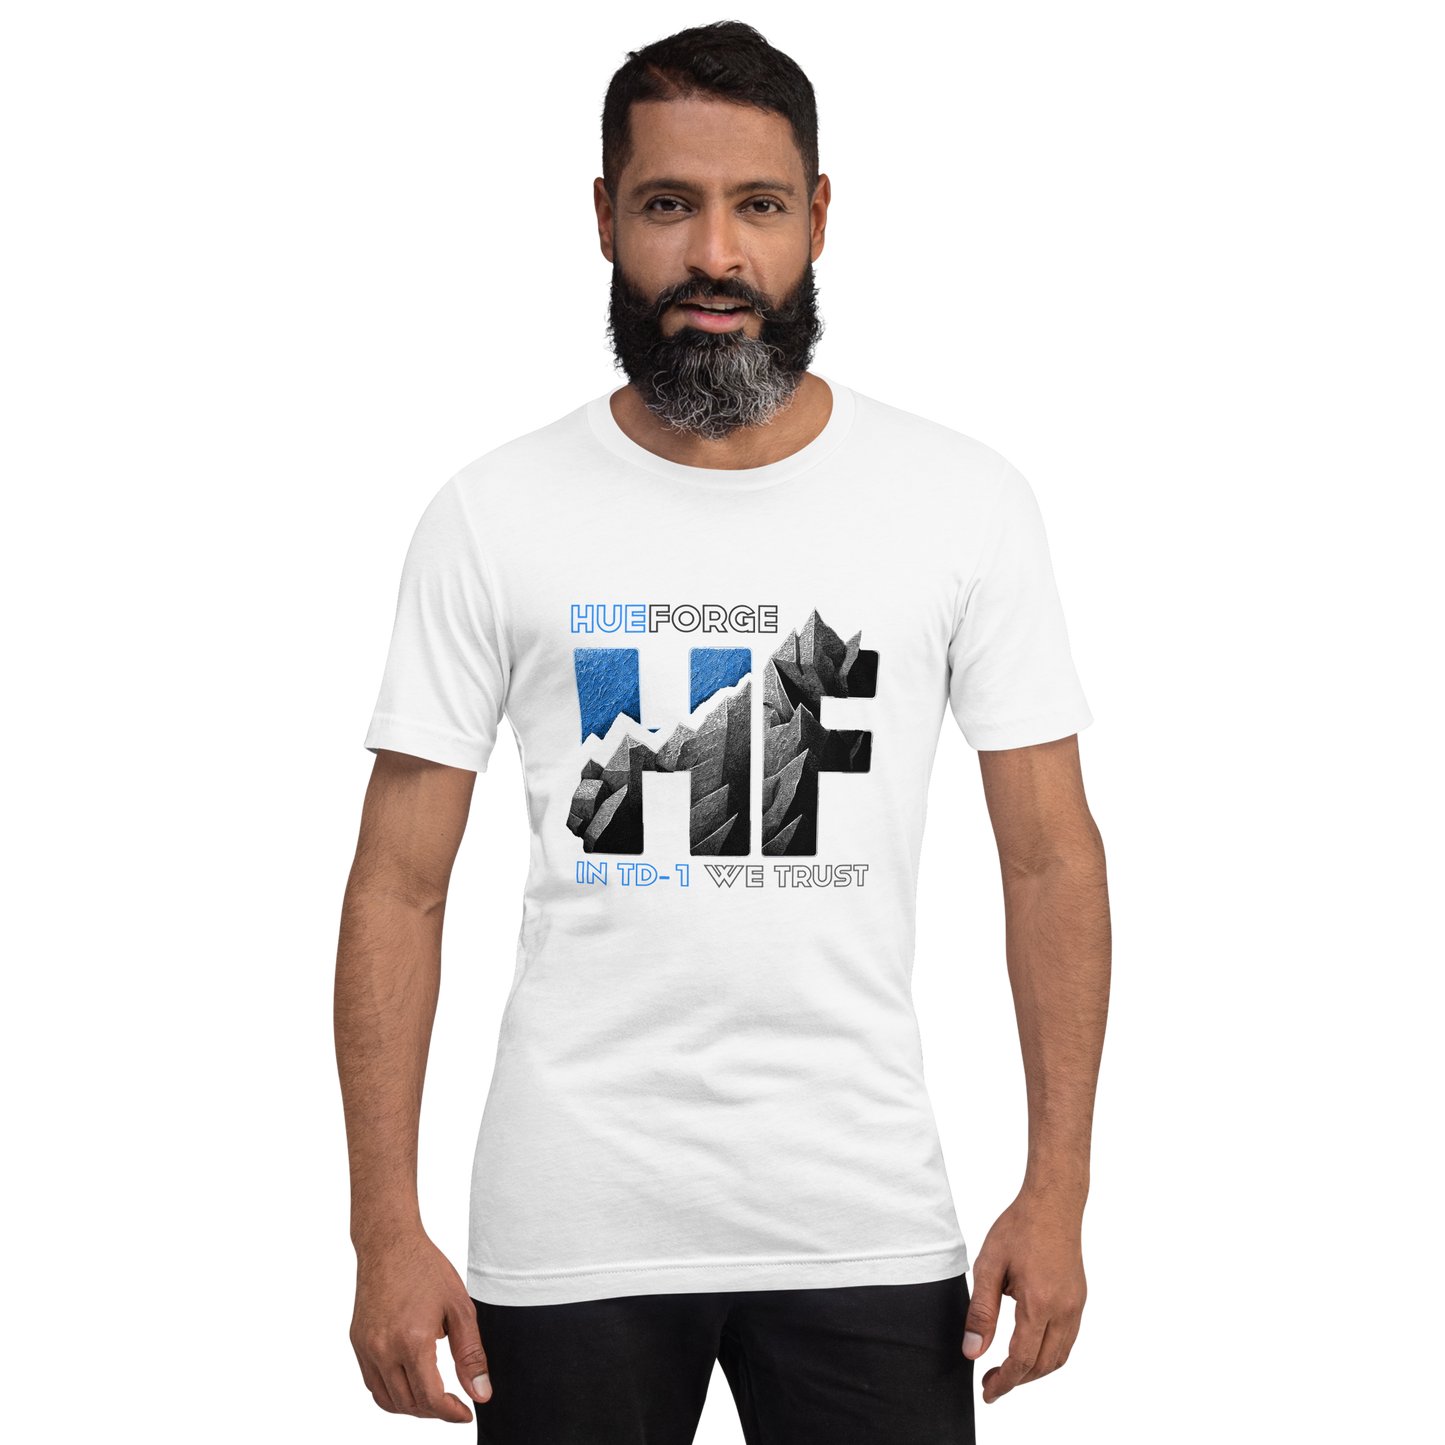 HueForge RMRRF T-Shirt